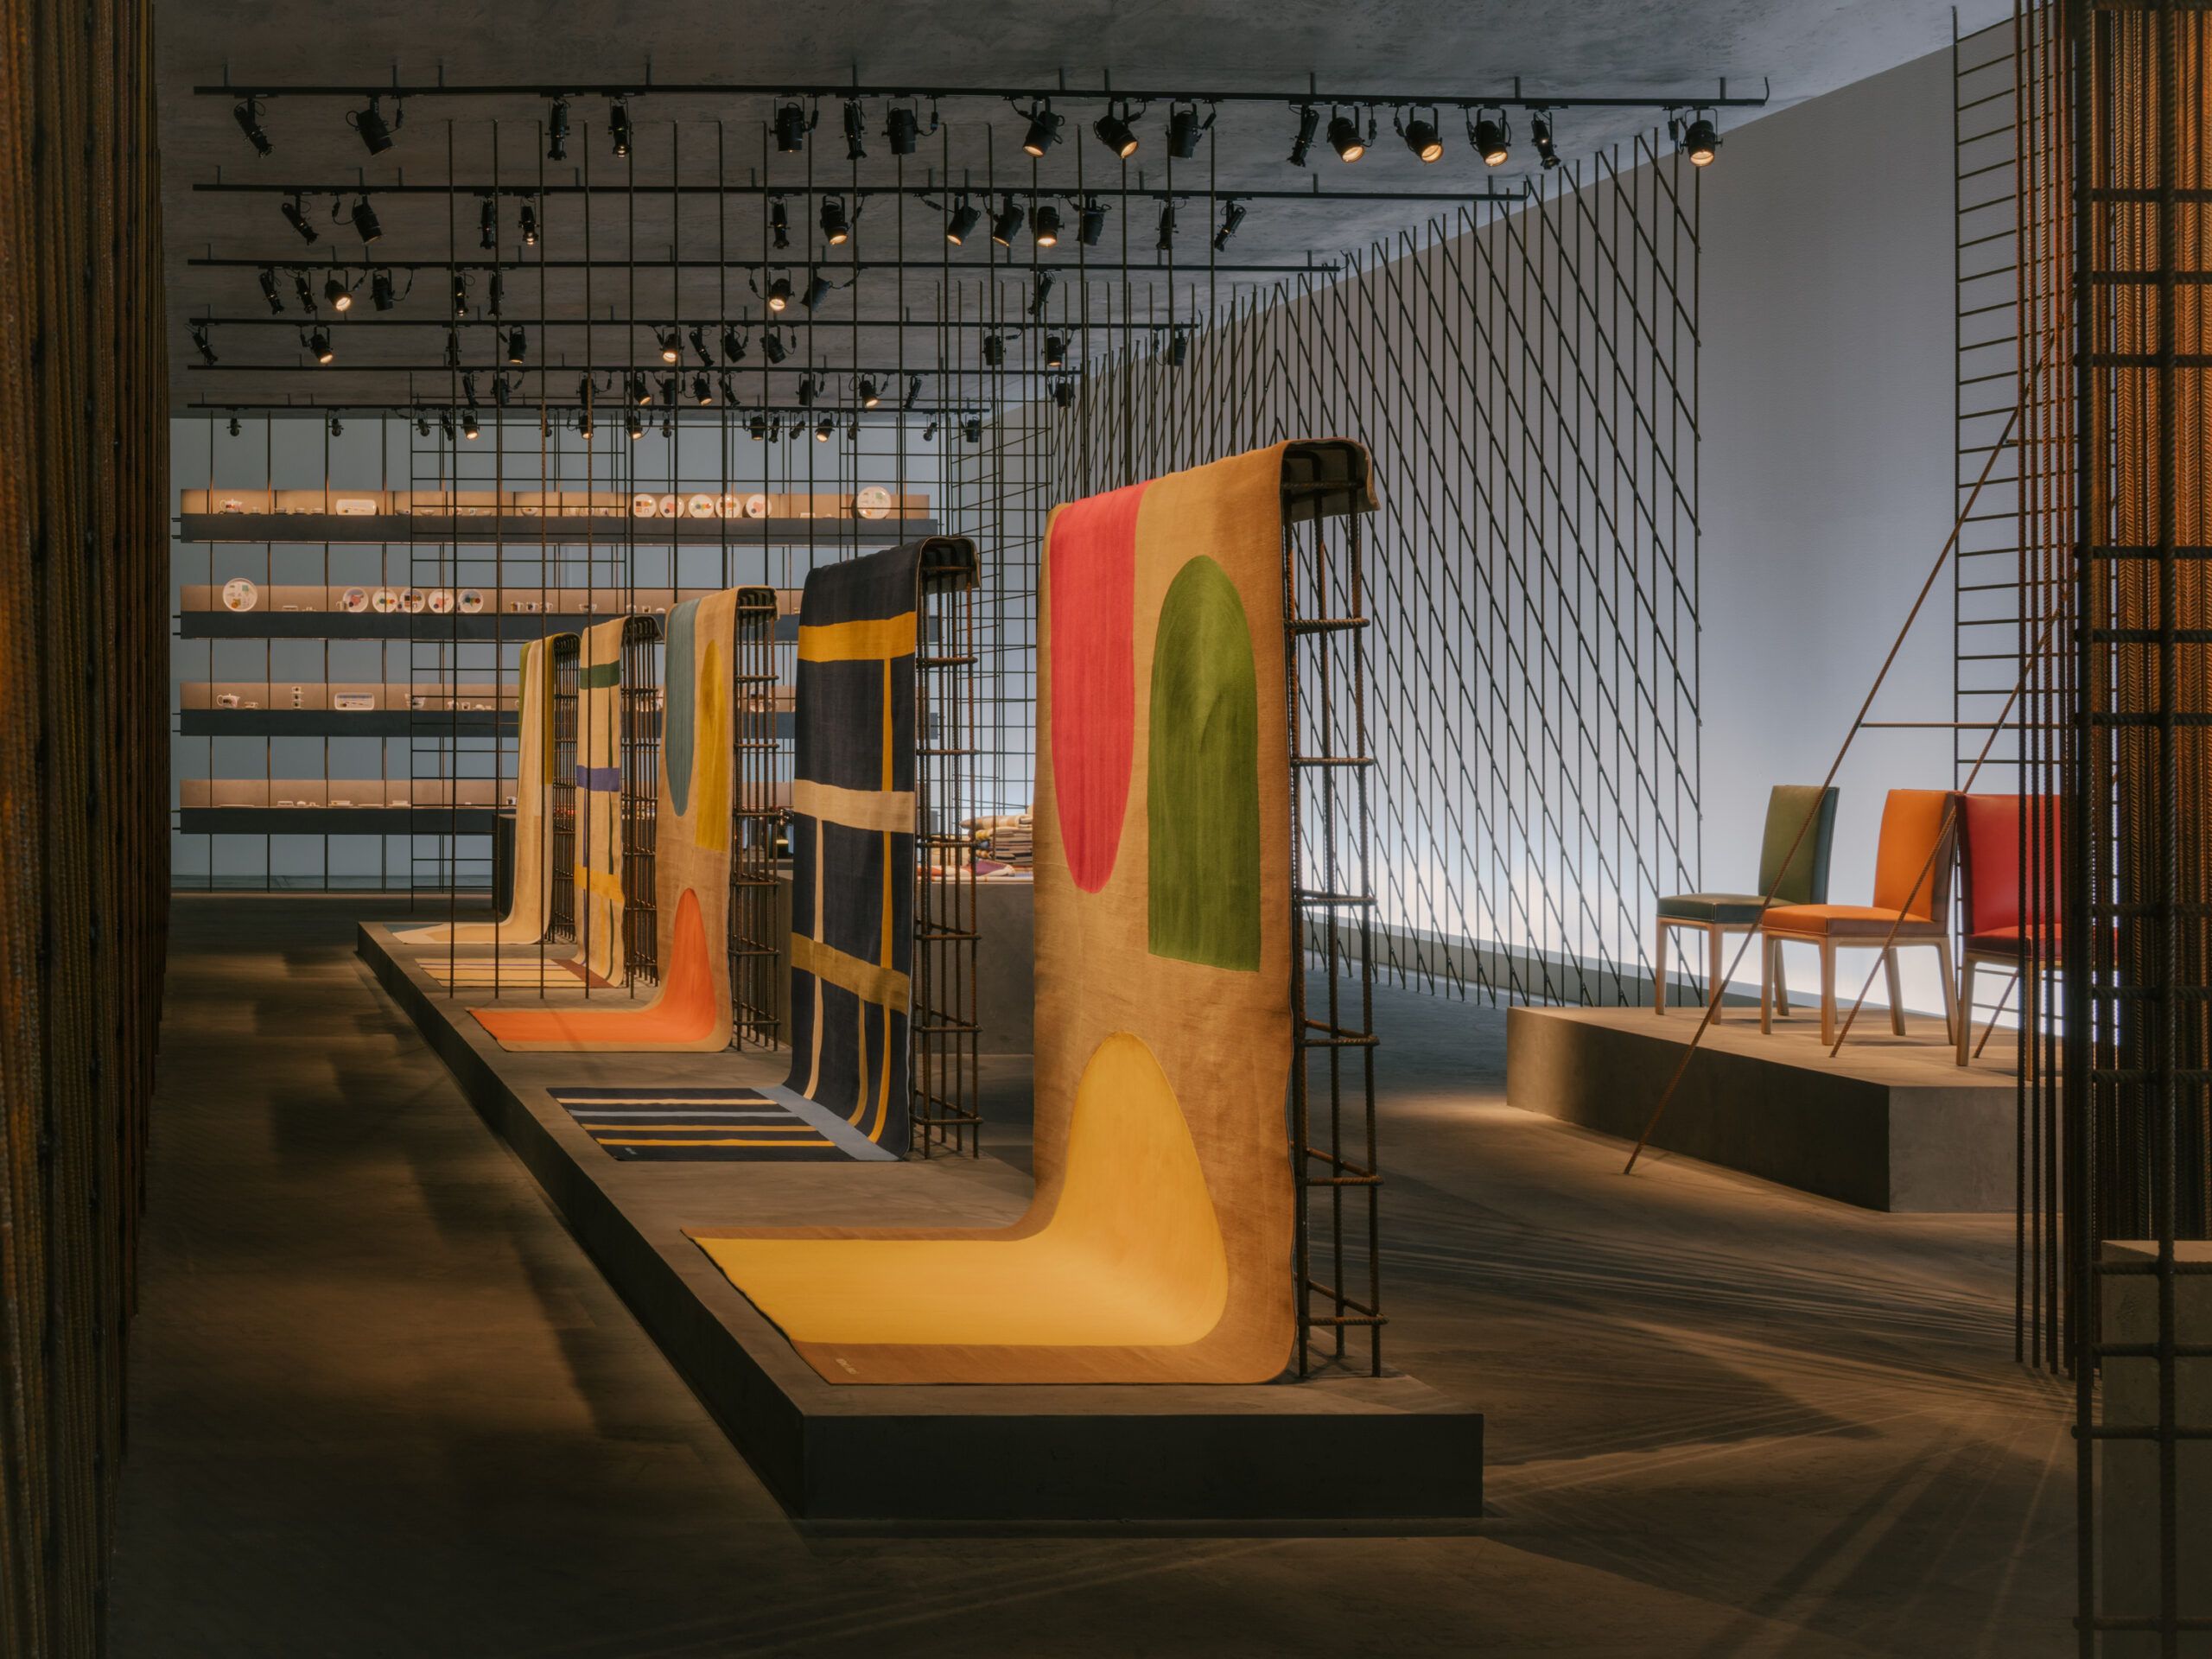 Objets Nomades at Milan Design Week 2023